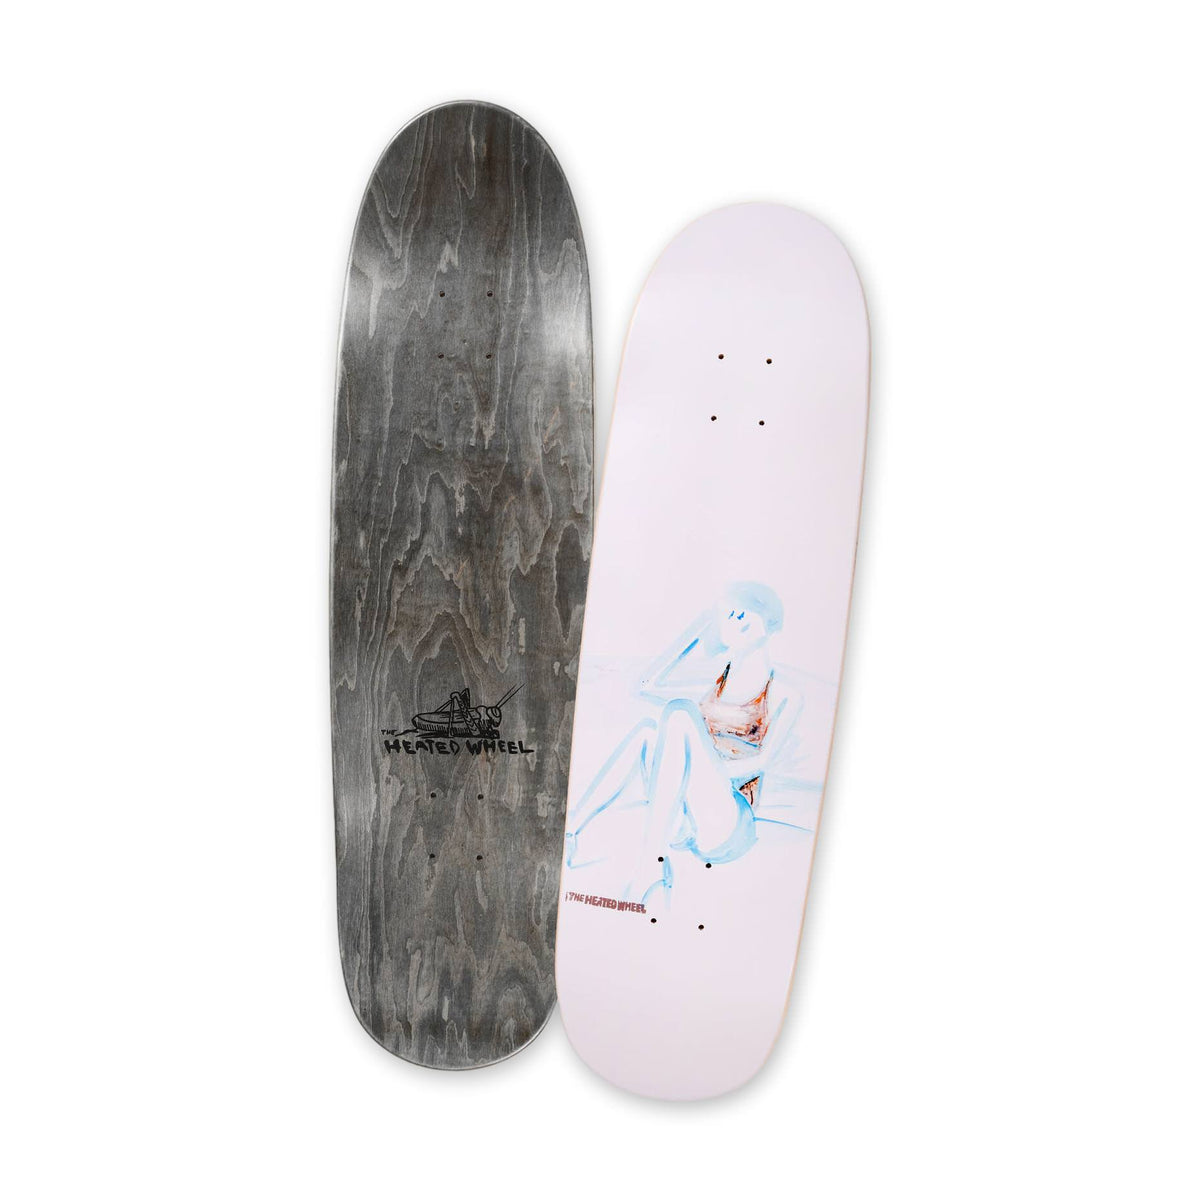 Buy Skateboard grip tape online – Stoked Boardshop